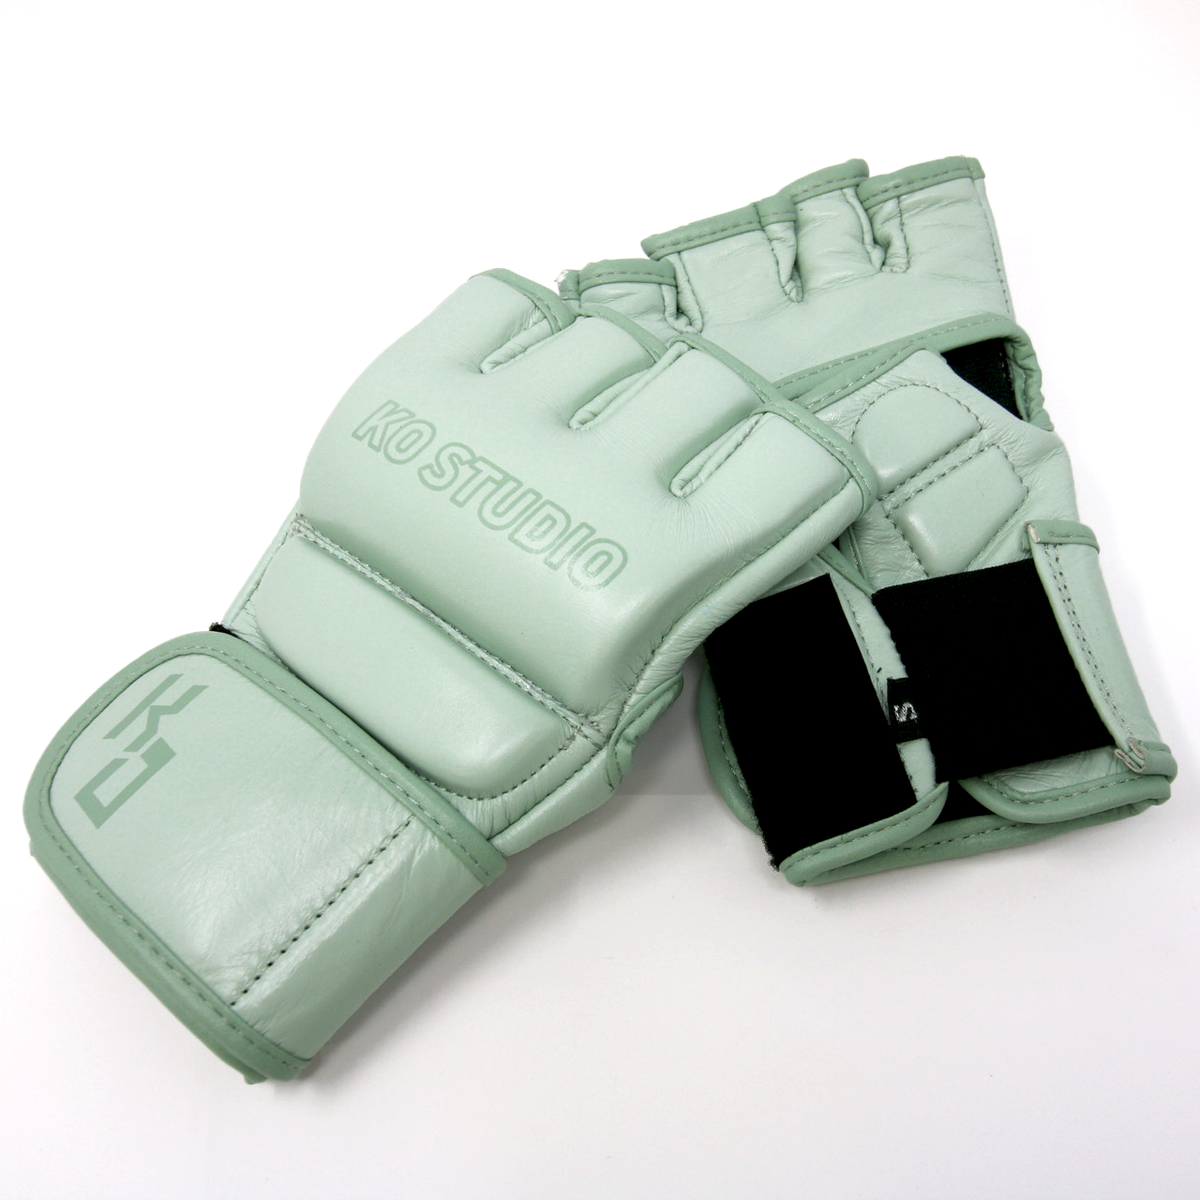 Midori MMA Gloves